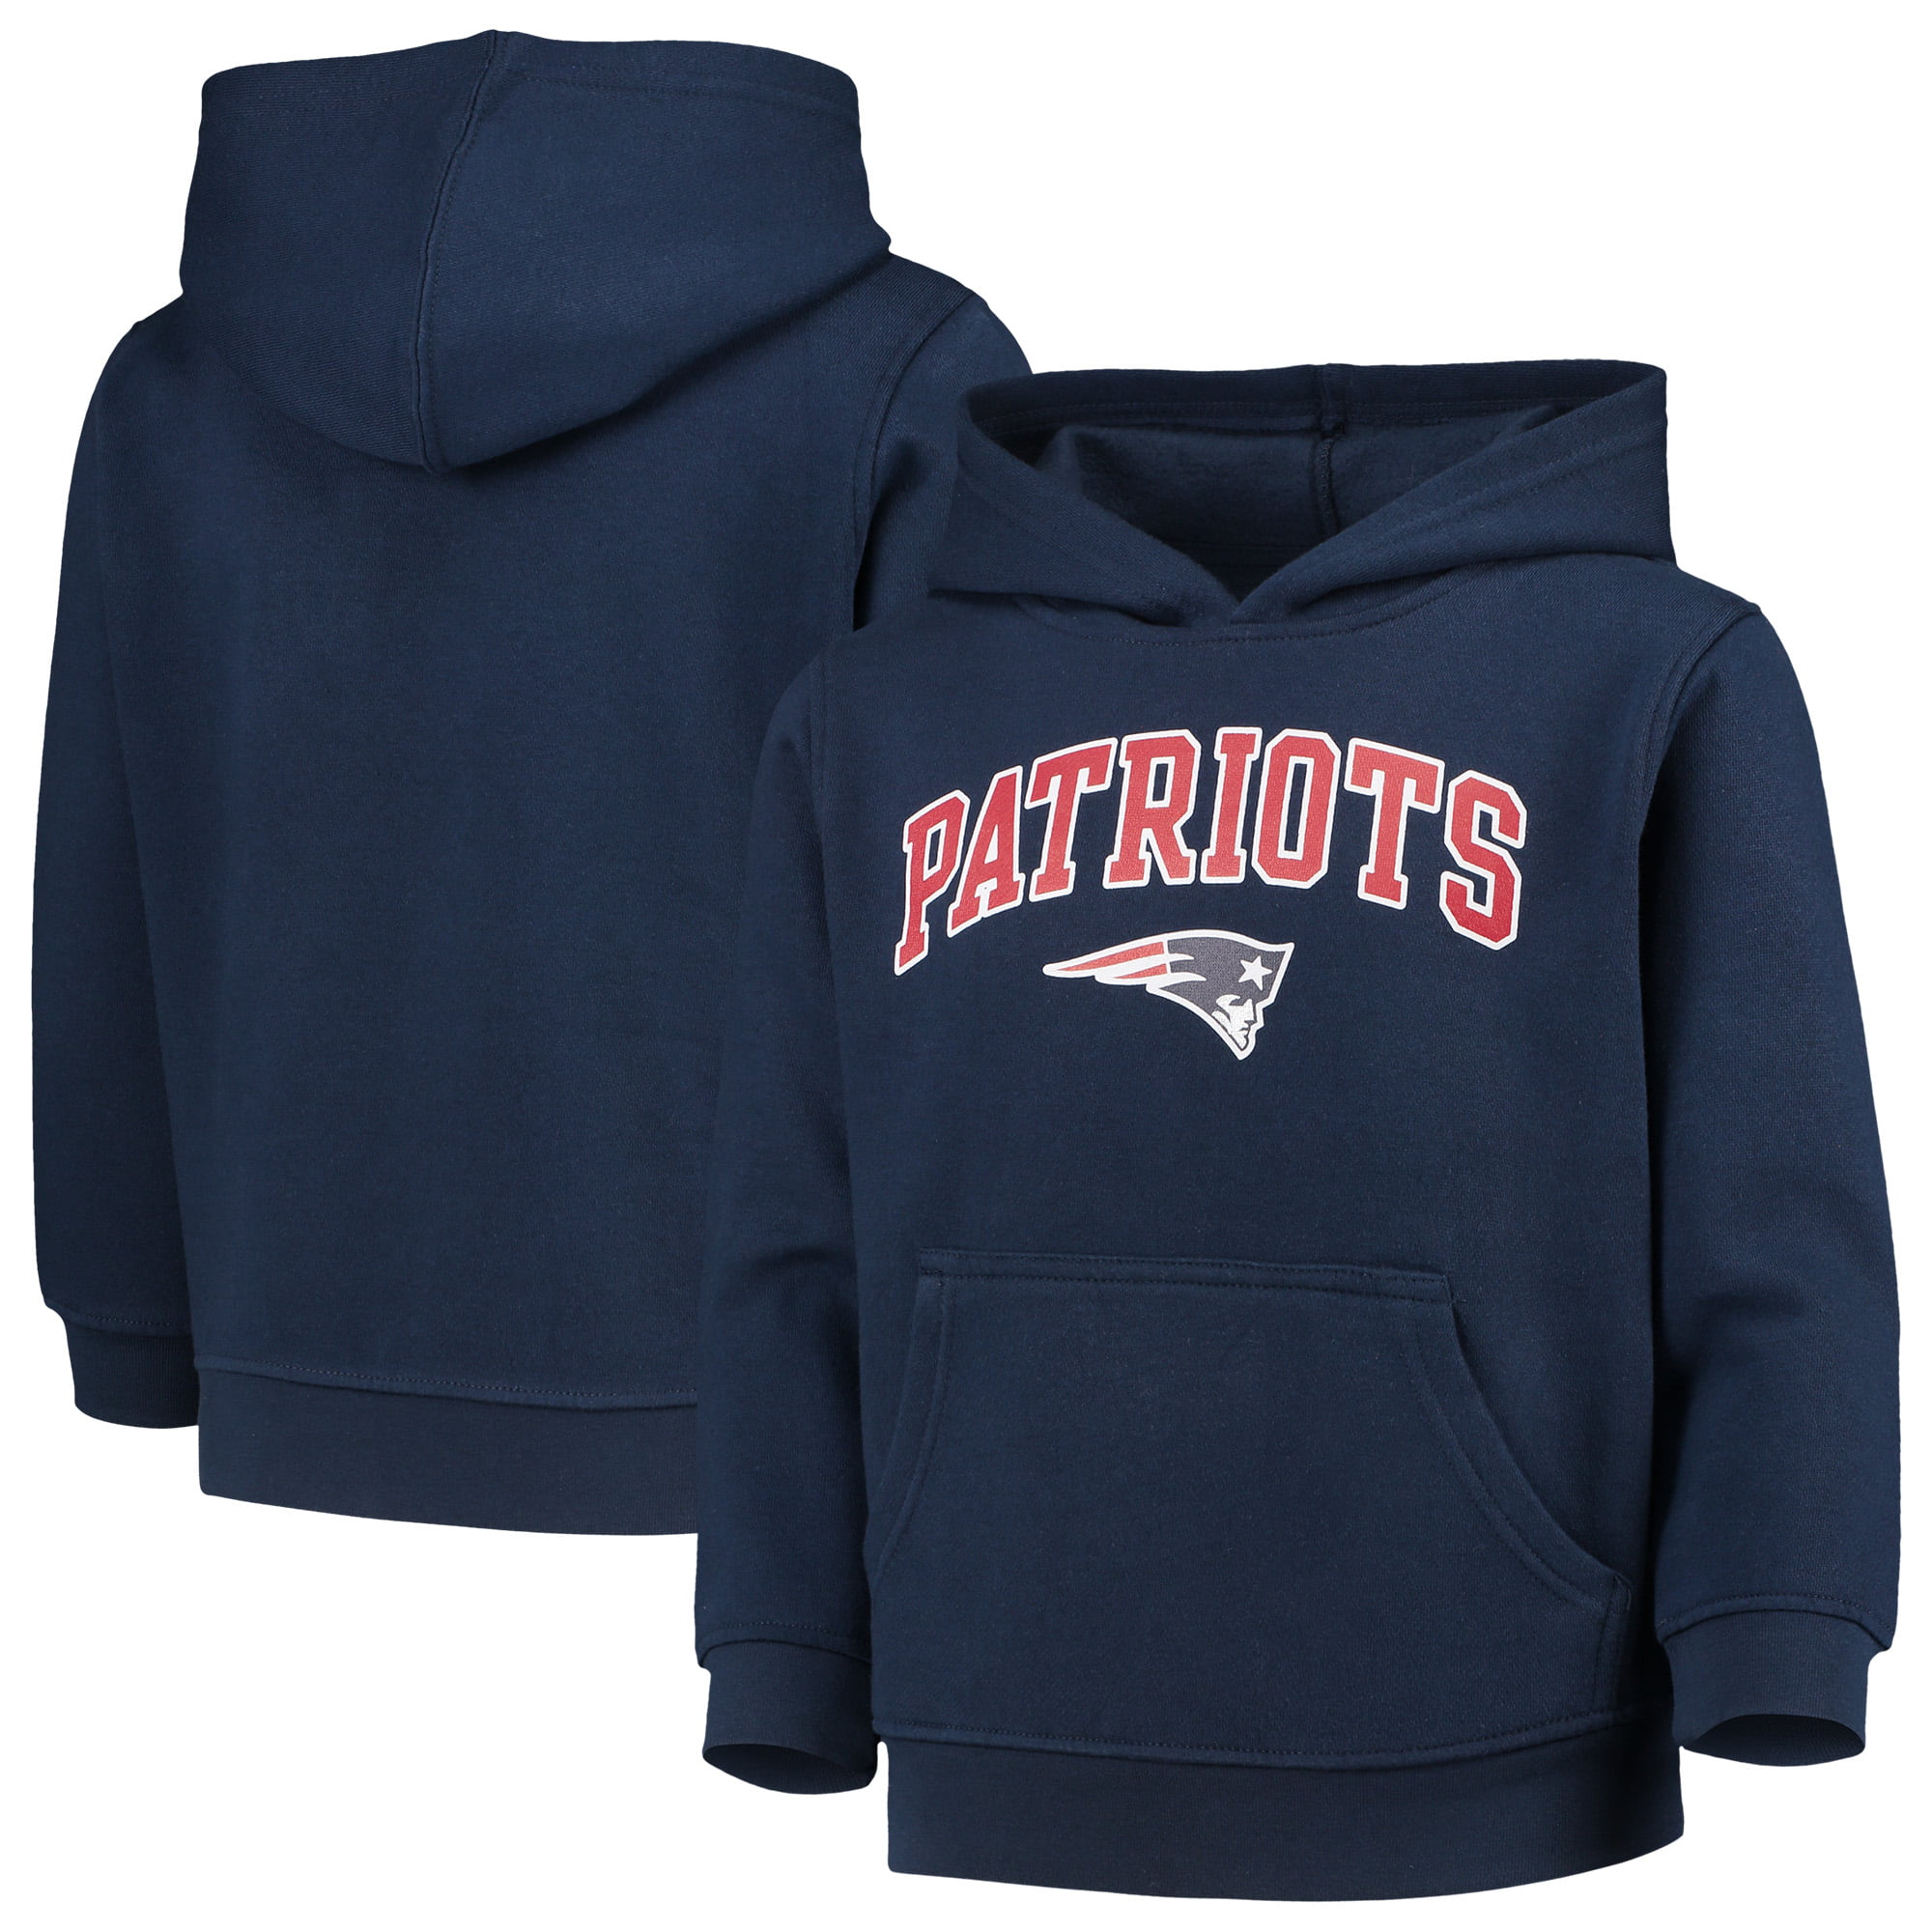 patriots hoodie for kids